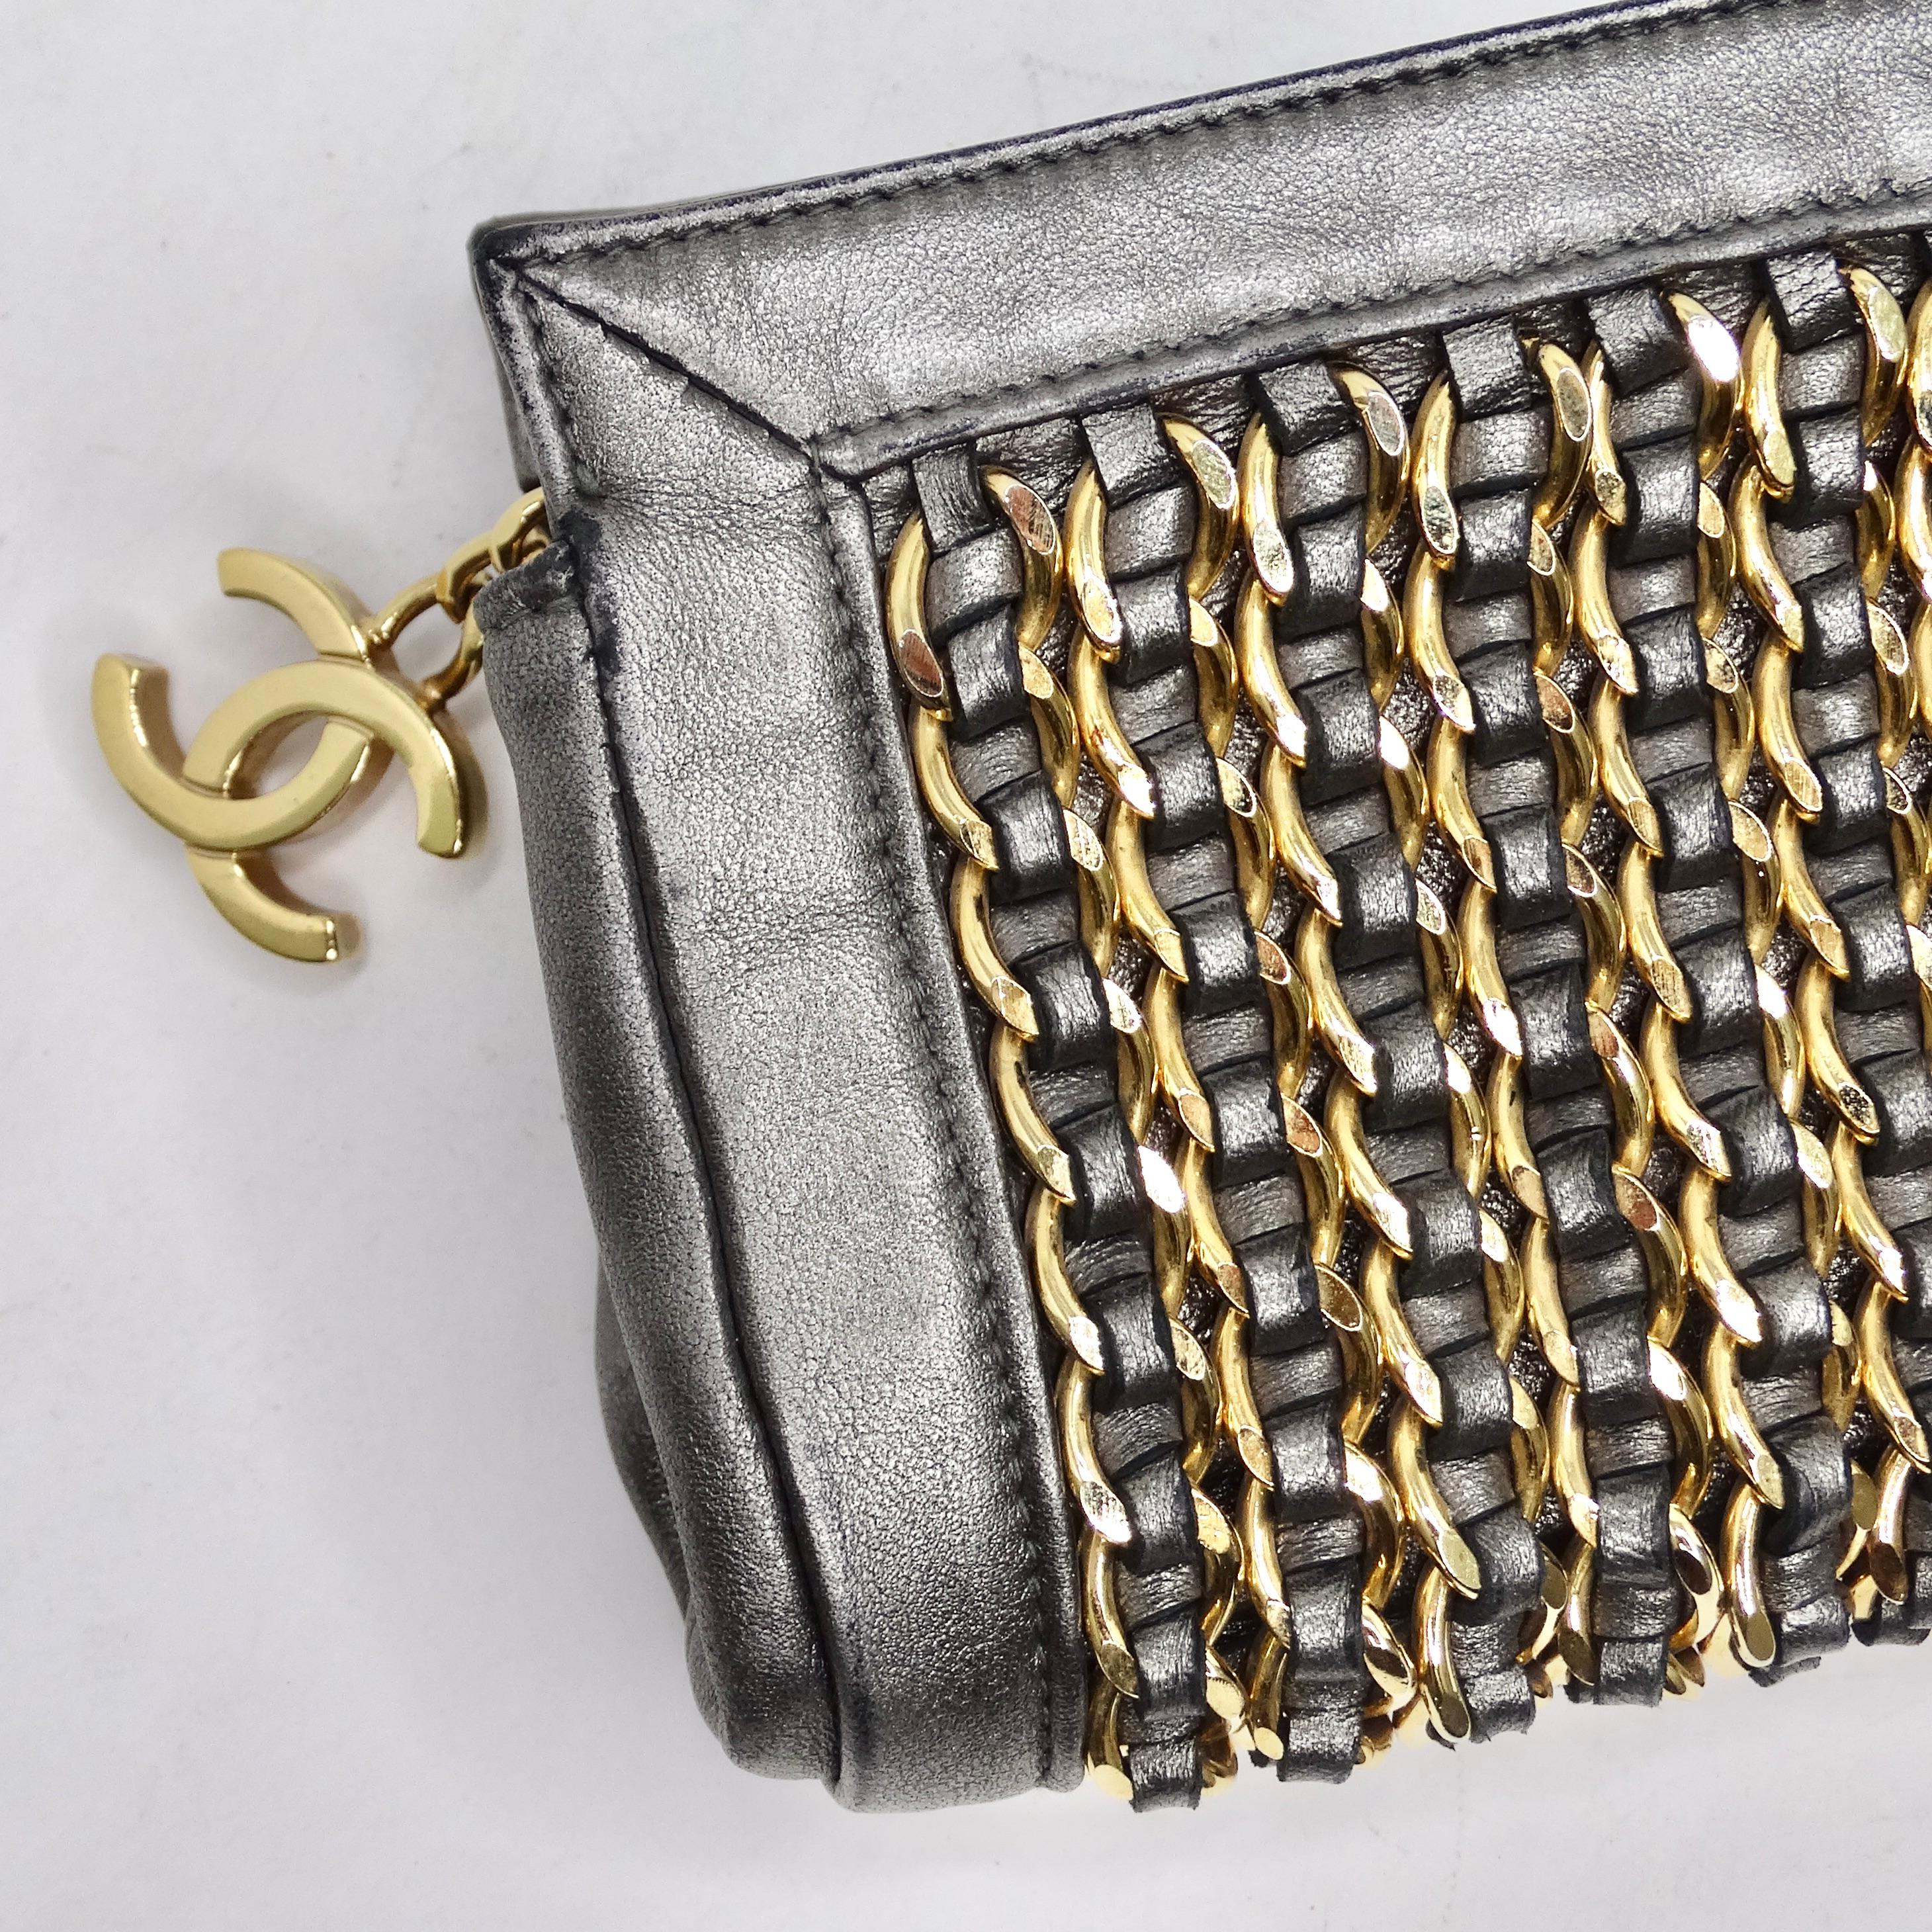 Die Chanel Lambskin Chain Embellished Clutch ist ein schillerndes und vielseitiges Accessoire, das Glamour und Zweckmäßigkeit nahtlos verbindet. Diese Clutch aus silberfarbenem Lammleder spiegelt das ikonische Design von Chanel wider und hebt sich